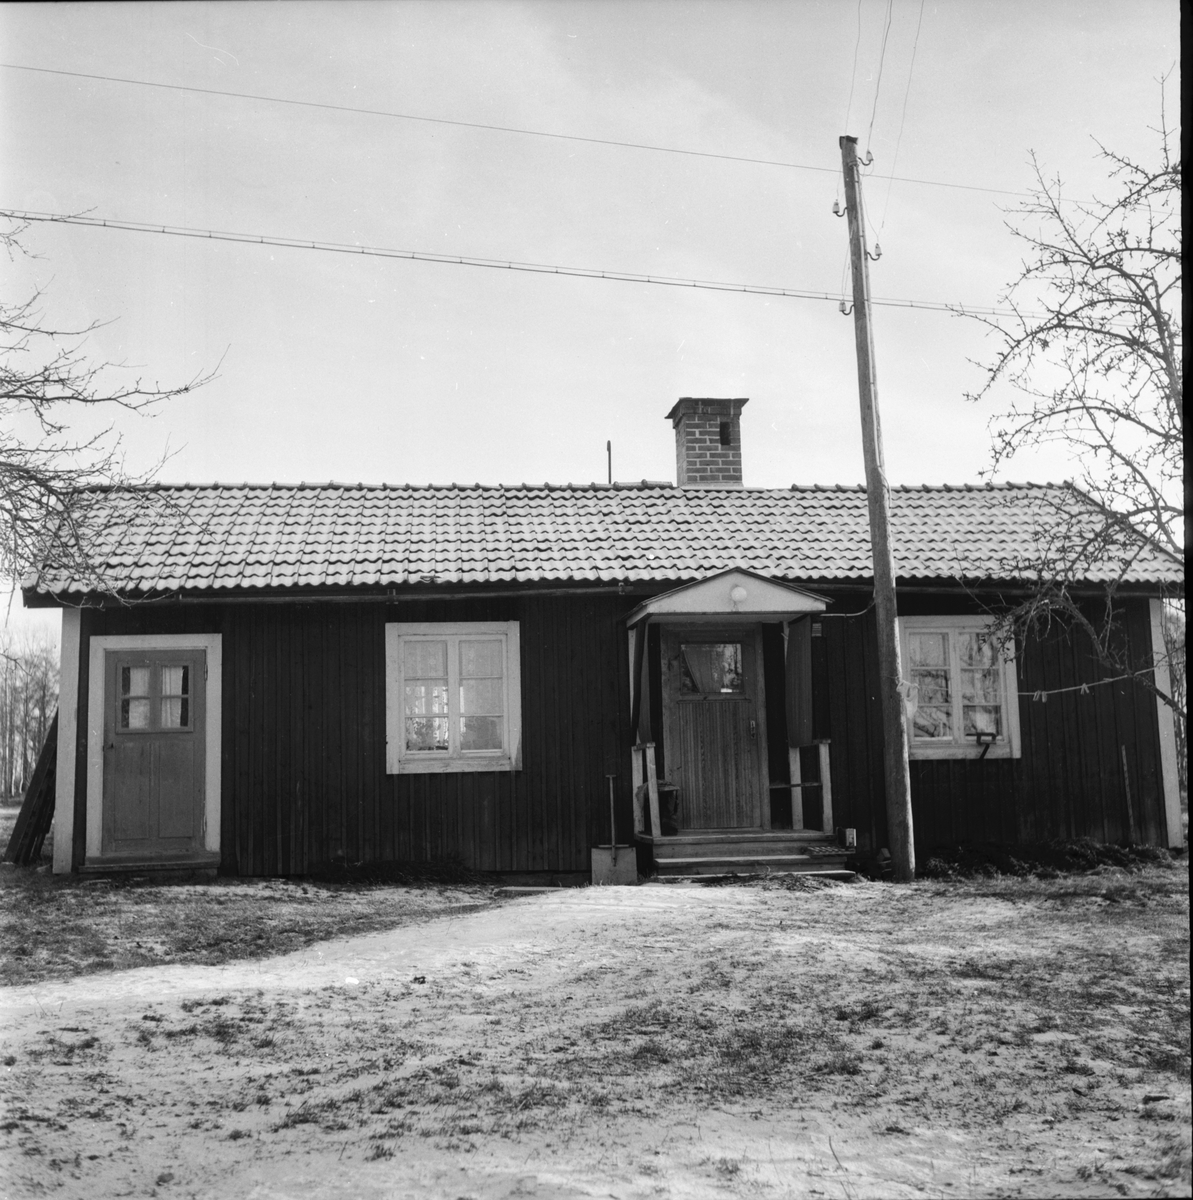 Andesladugård. Jonas Jonsson, Per Berglöf, Viktor Andersson.
Forsa december 1957